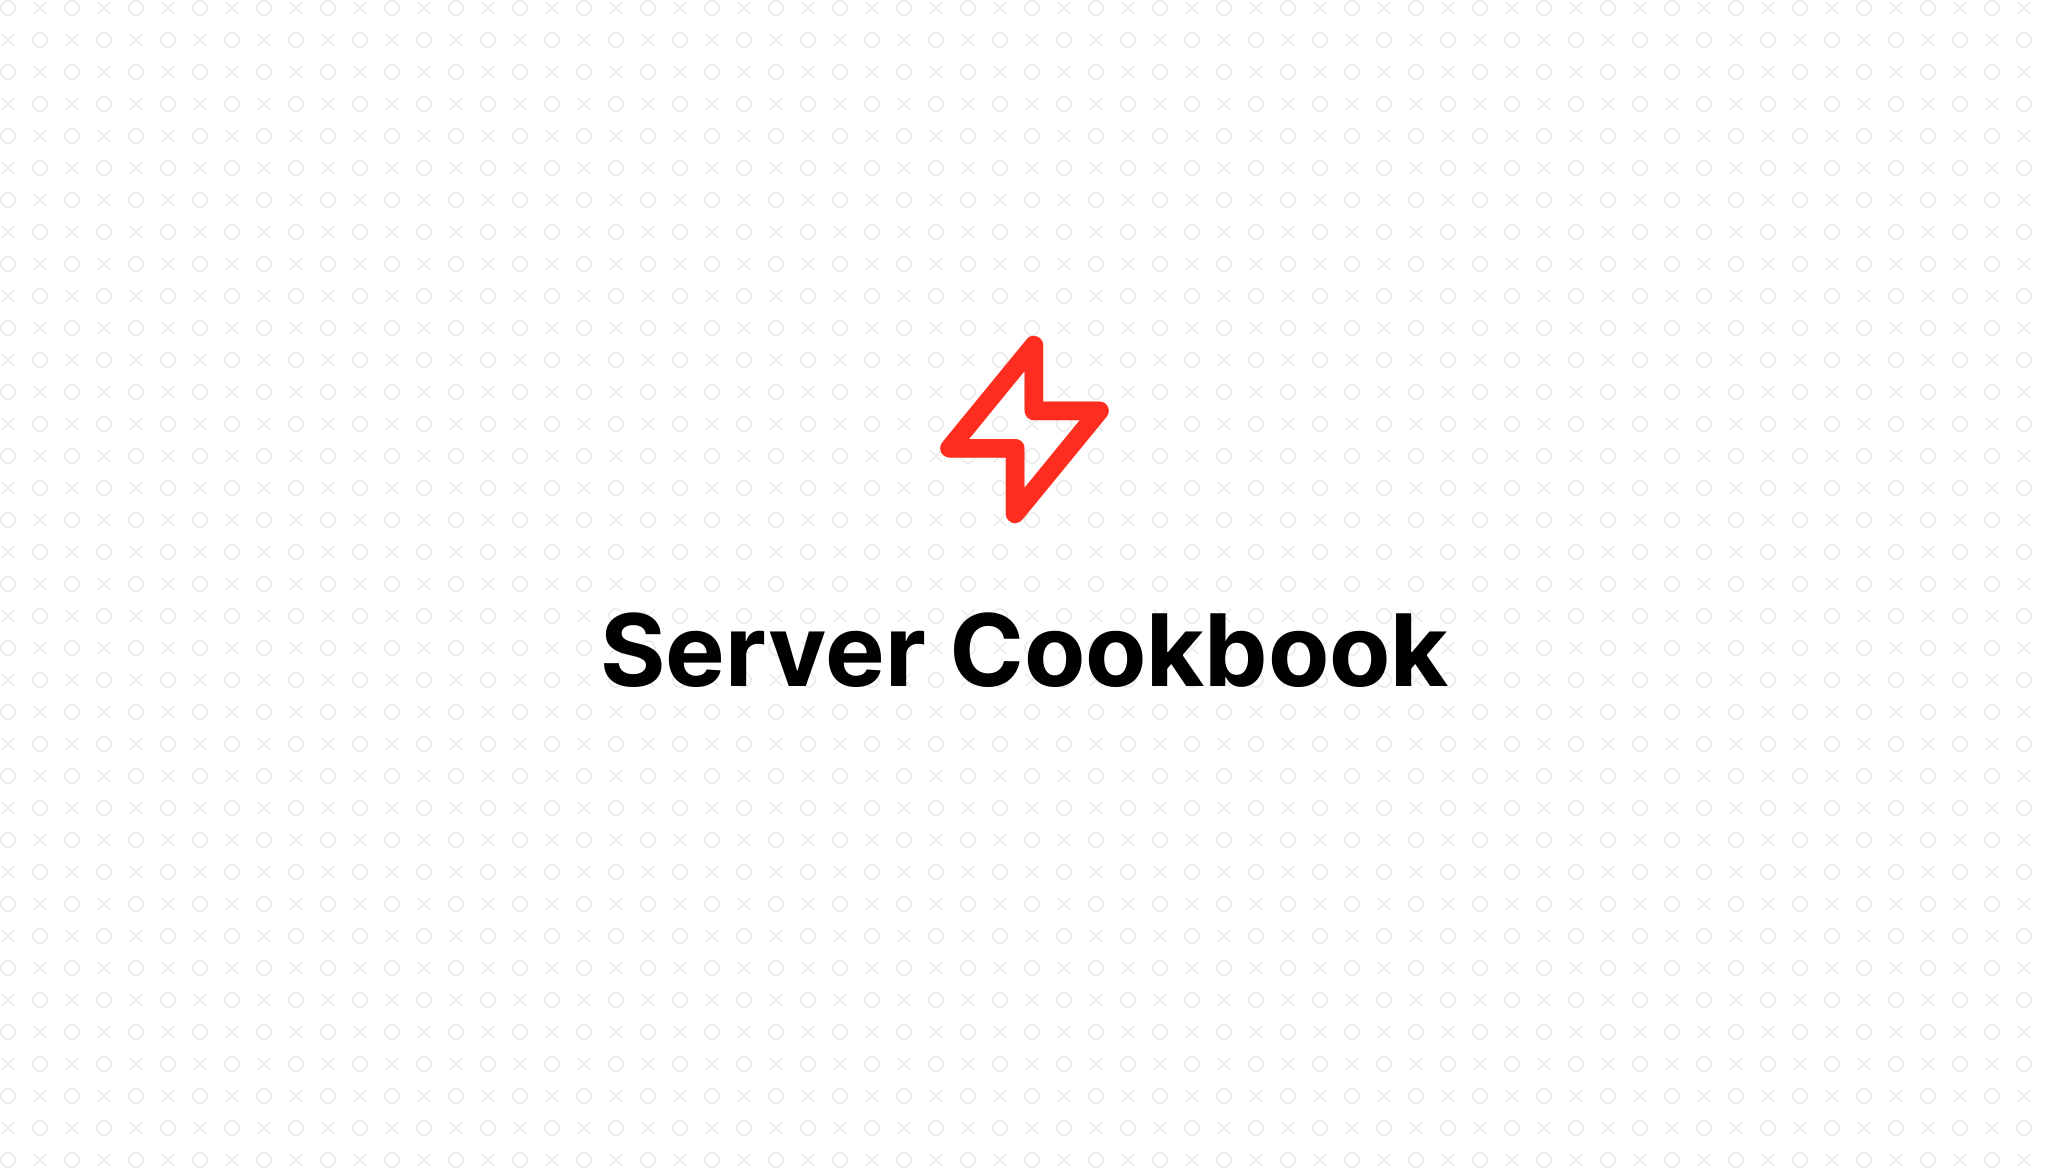 Server Cookbook